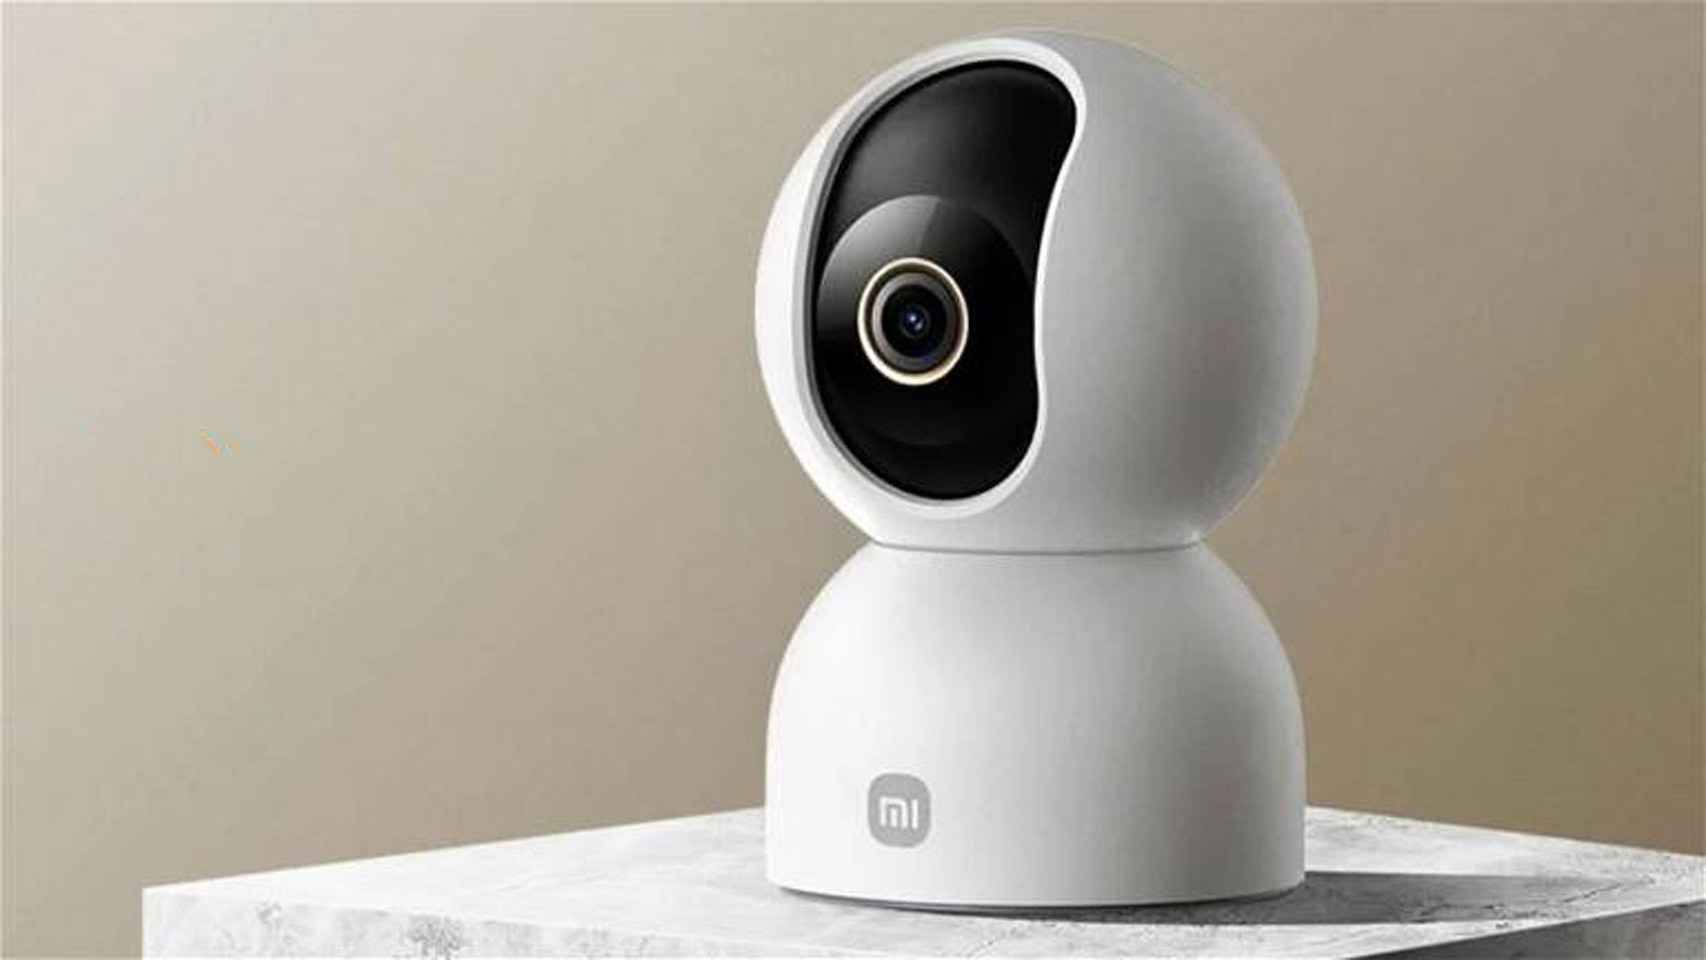 La cámara de Xiaomi que blinda tu casa: visión nocturna y escucha voces a 8  metros